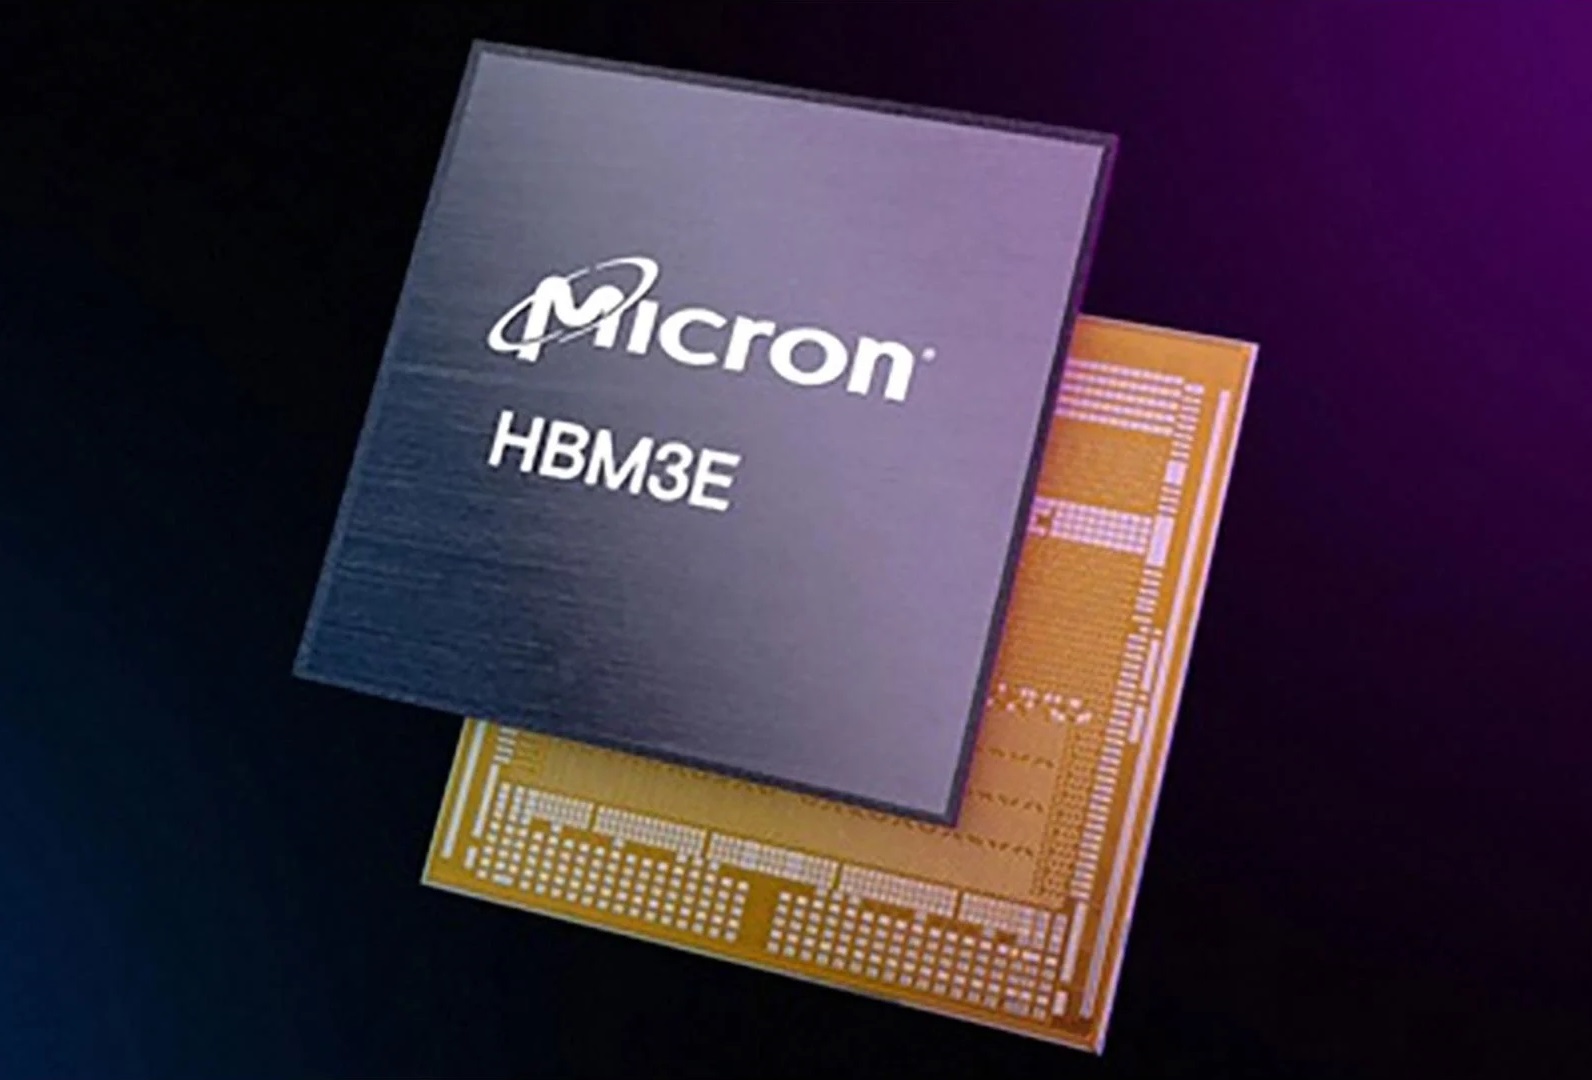 Micron starts mass producing its HBM3e memory technology